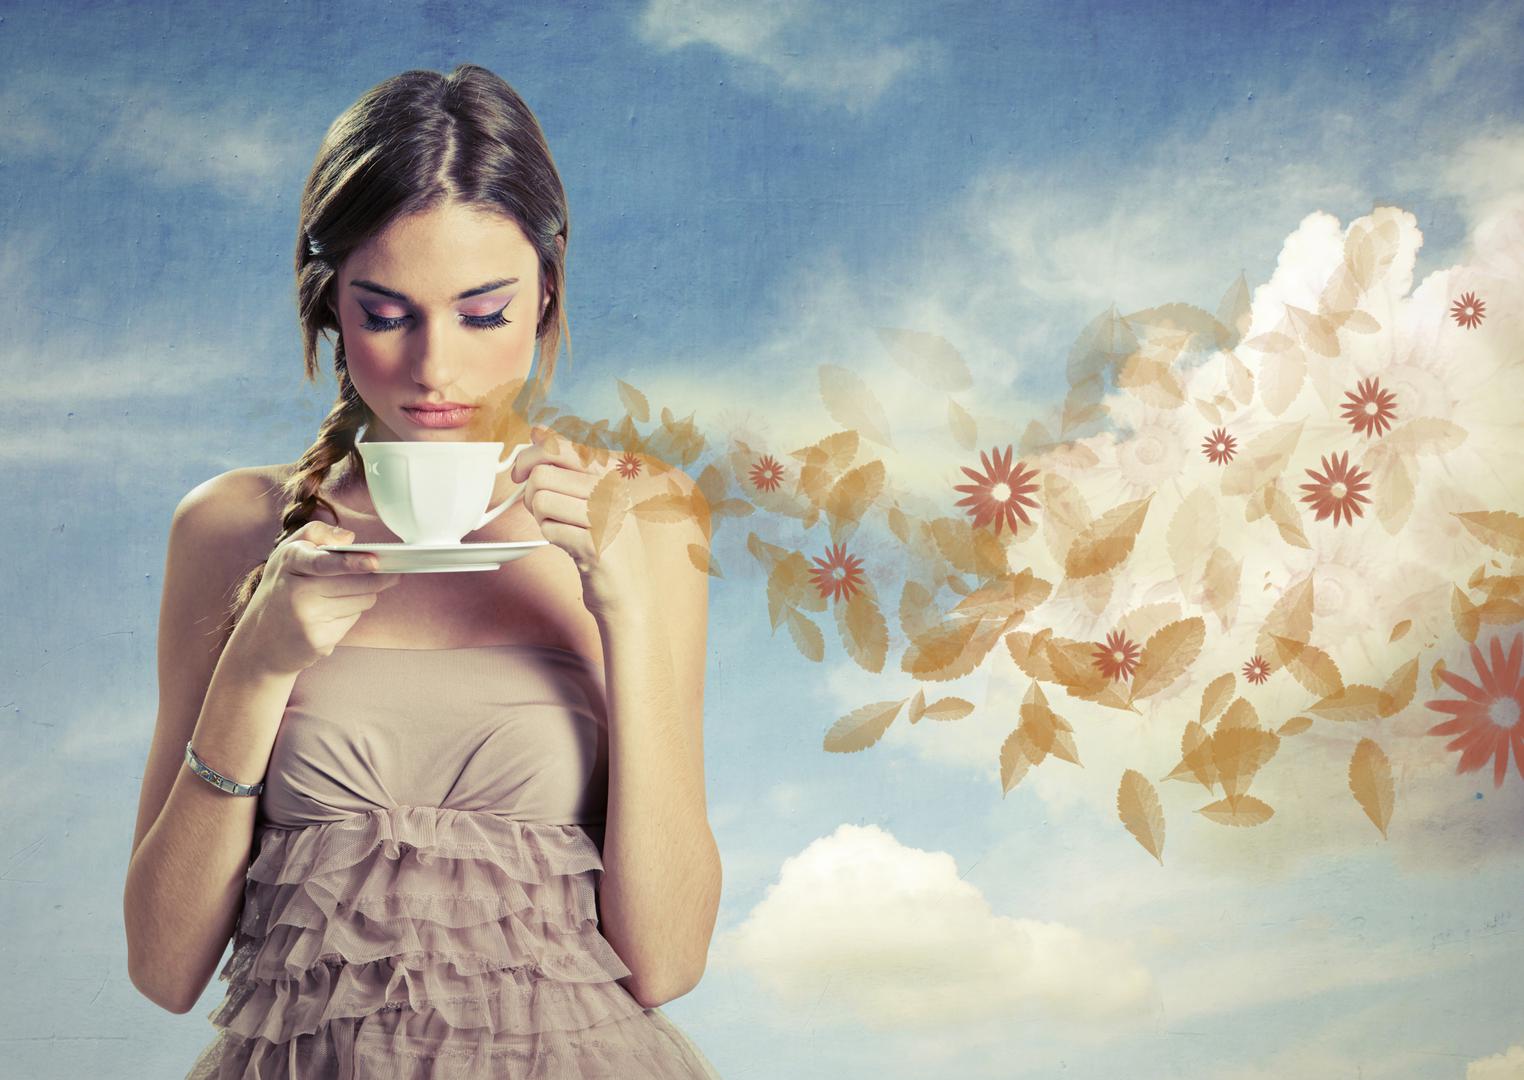 Bijeli čaj ima blagi okus s dozom slatkoće, a pomaže kod dijabetesa, raka, bakterijskih upala. 

